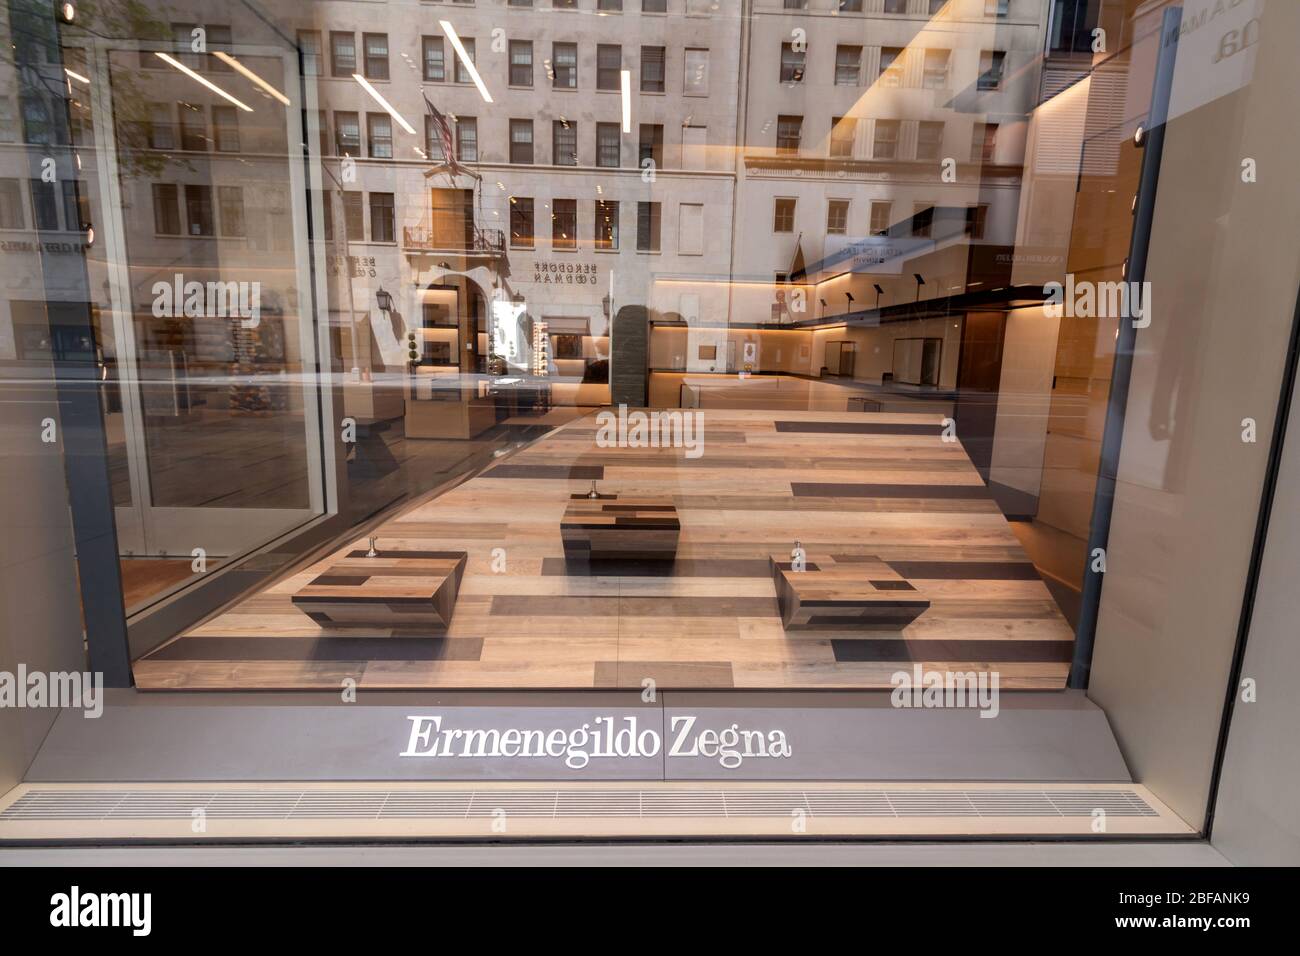 Scaffali vuoti nella vetrina del negozio Ermenegildo Zegna il 57 ° st., chiusi a causa del coronavirus o covid-19 pandemic Foto Stock